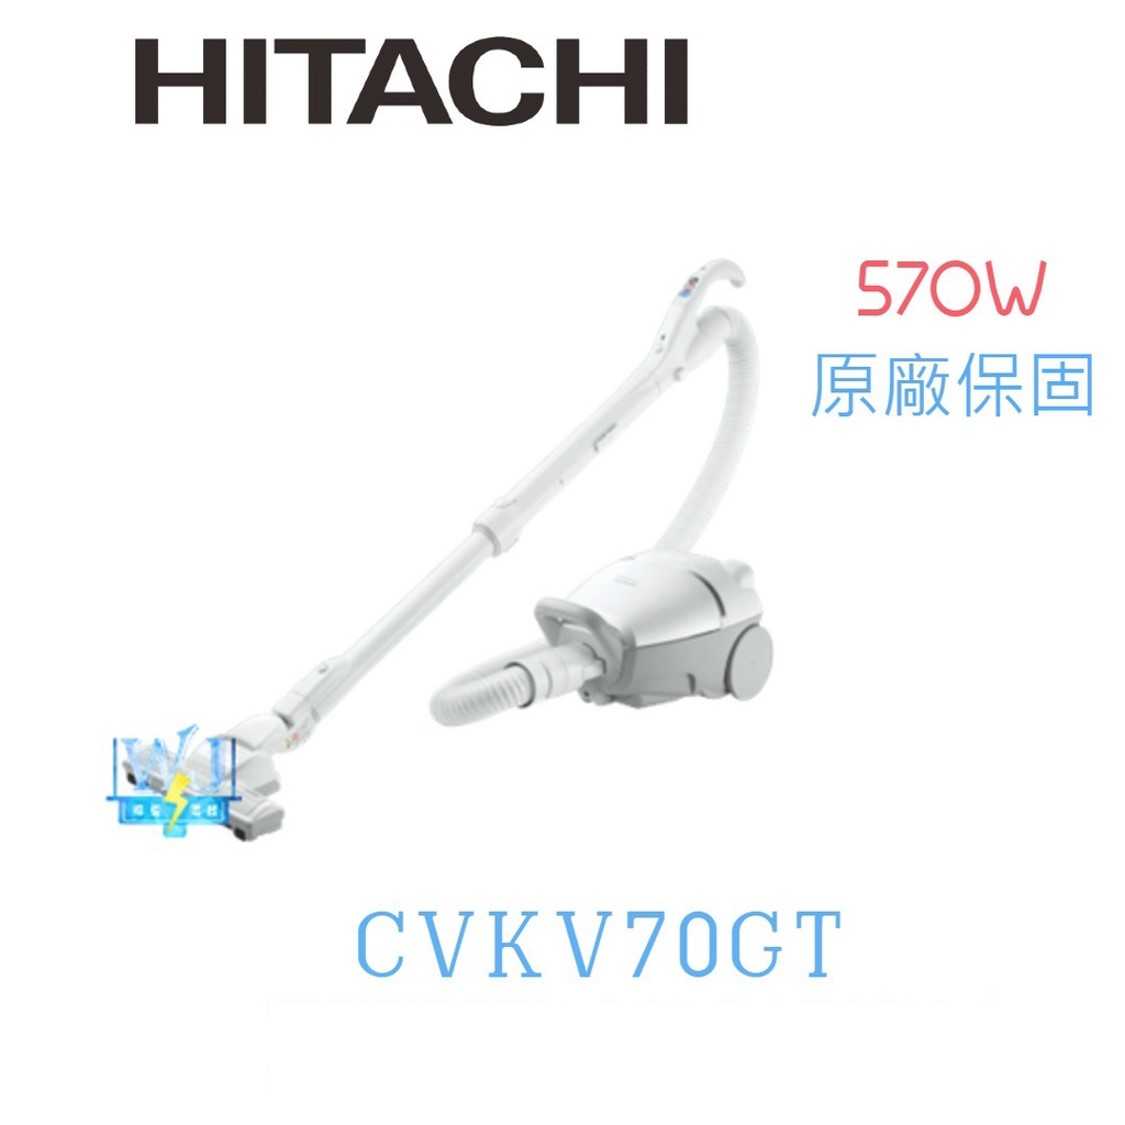 有現貨【暐竣電器】HITACHI 日立 CVKV70GT 吸塵器 日本製紙袋型吸塵器 570W大吸力吸塵器